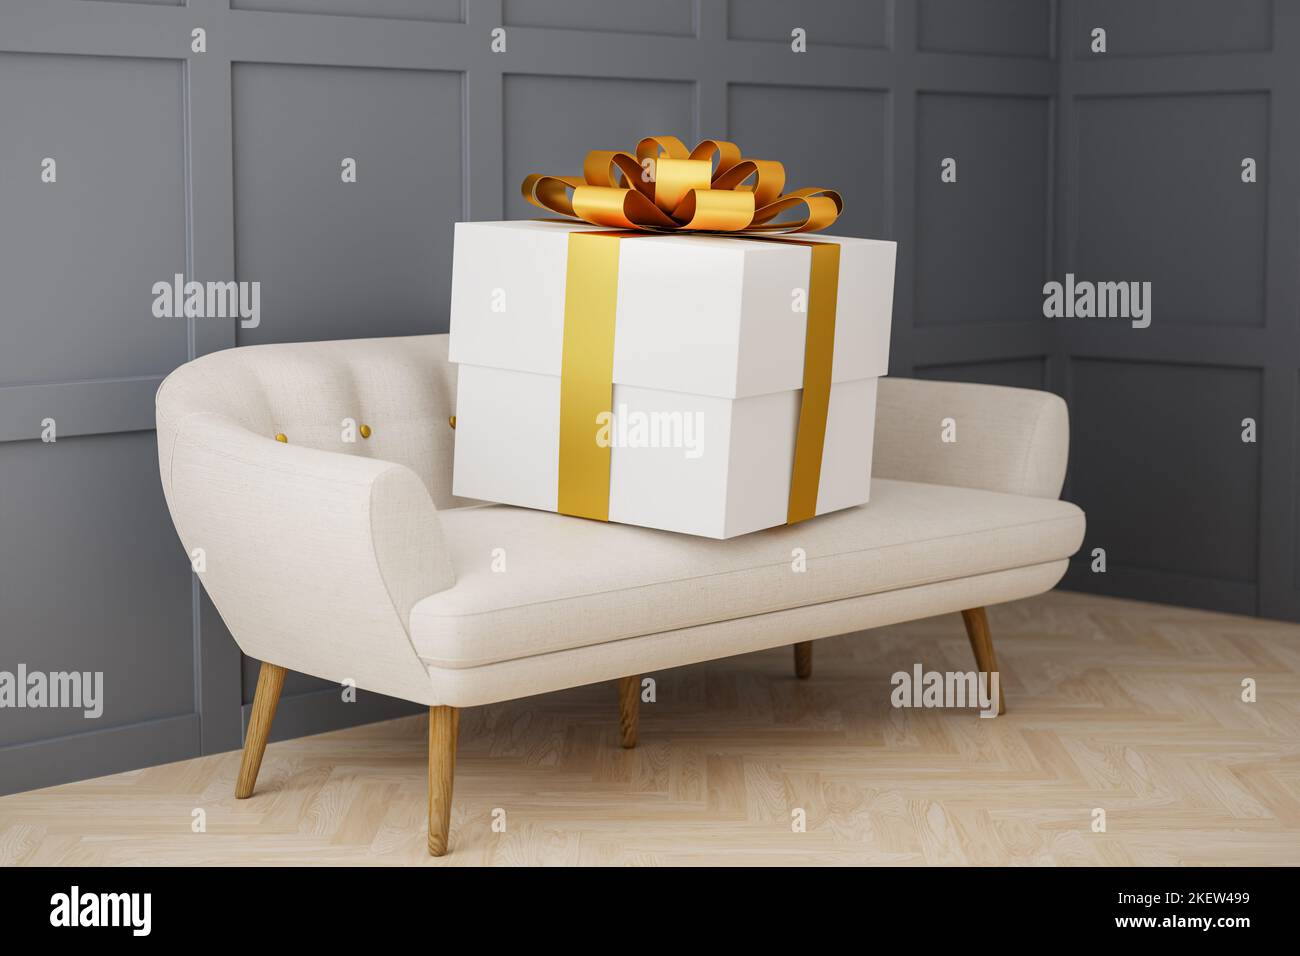 Eine übergroße Geschenk-Box auf einem Sofa. Konzept für übermäßiges Geben. Stockfoto